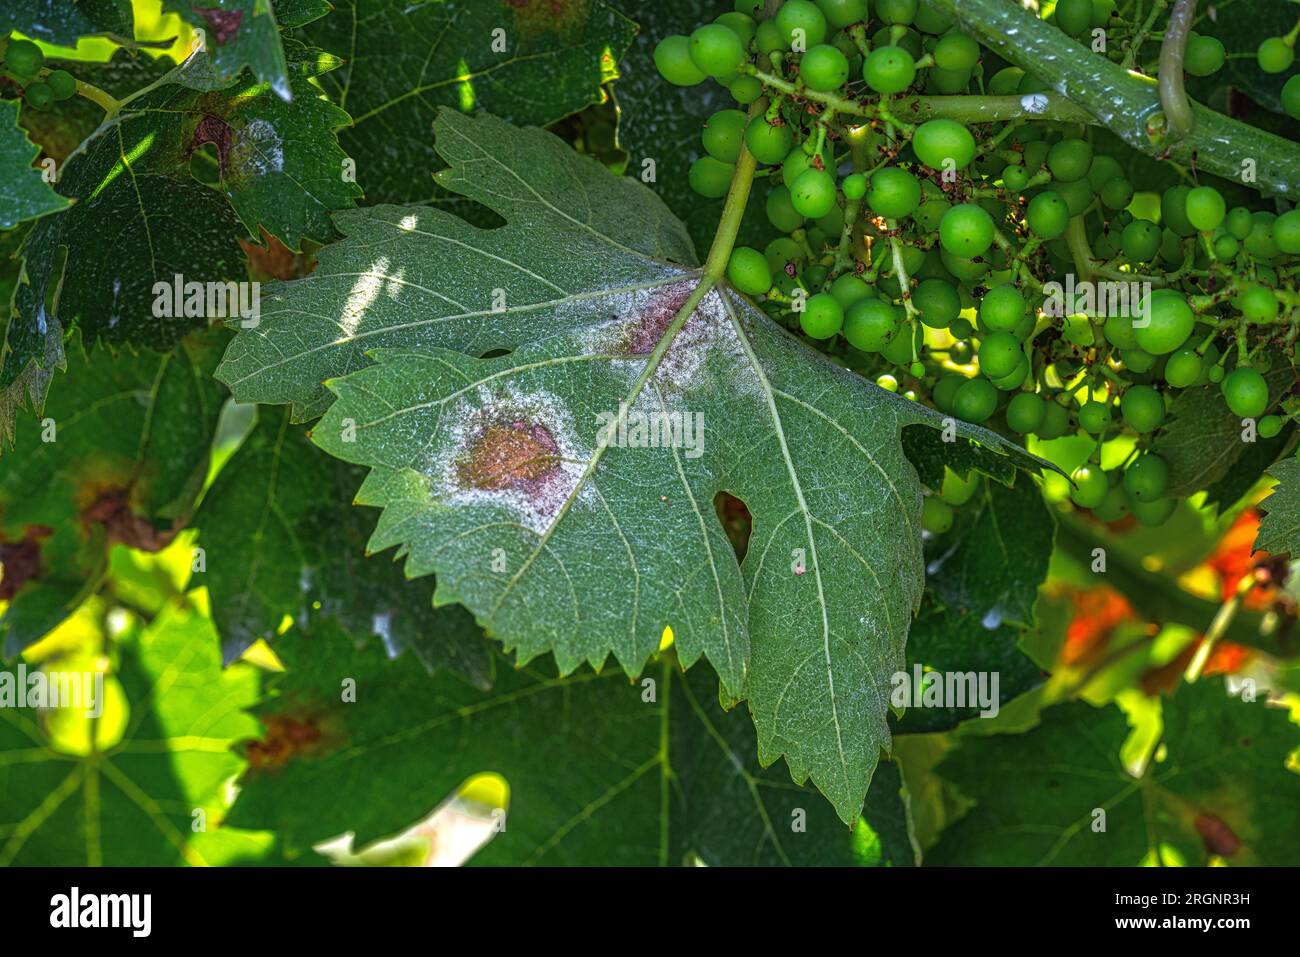 Viñedo infectado con plasmopara viticola, una peligrosa enfermedad de la uva. Foto de stock